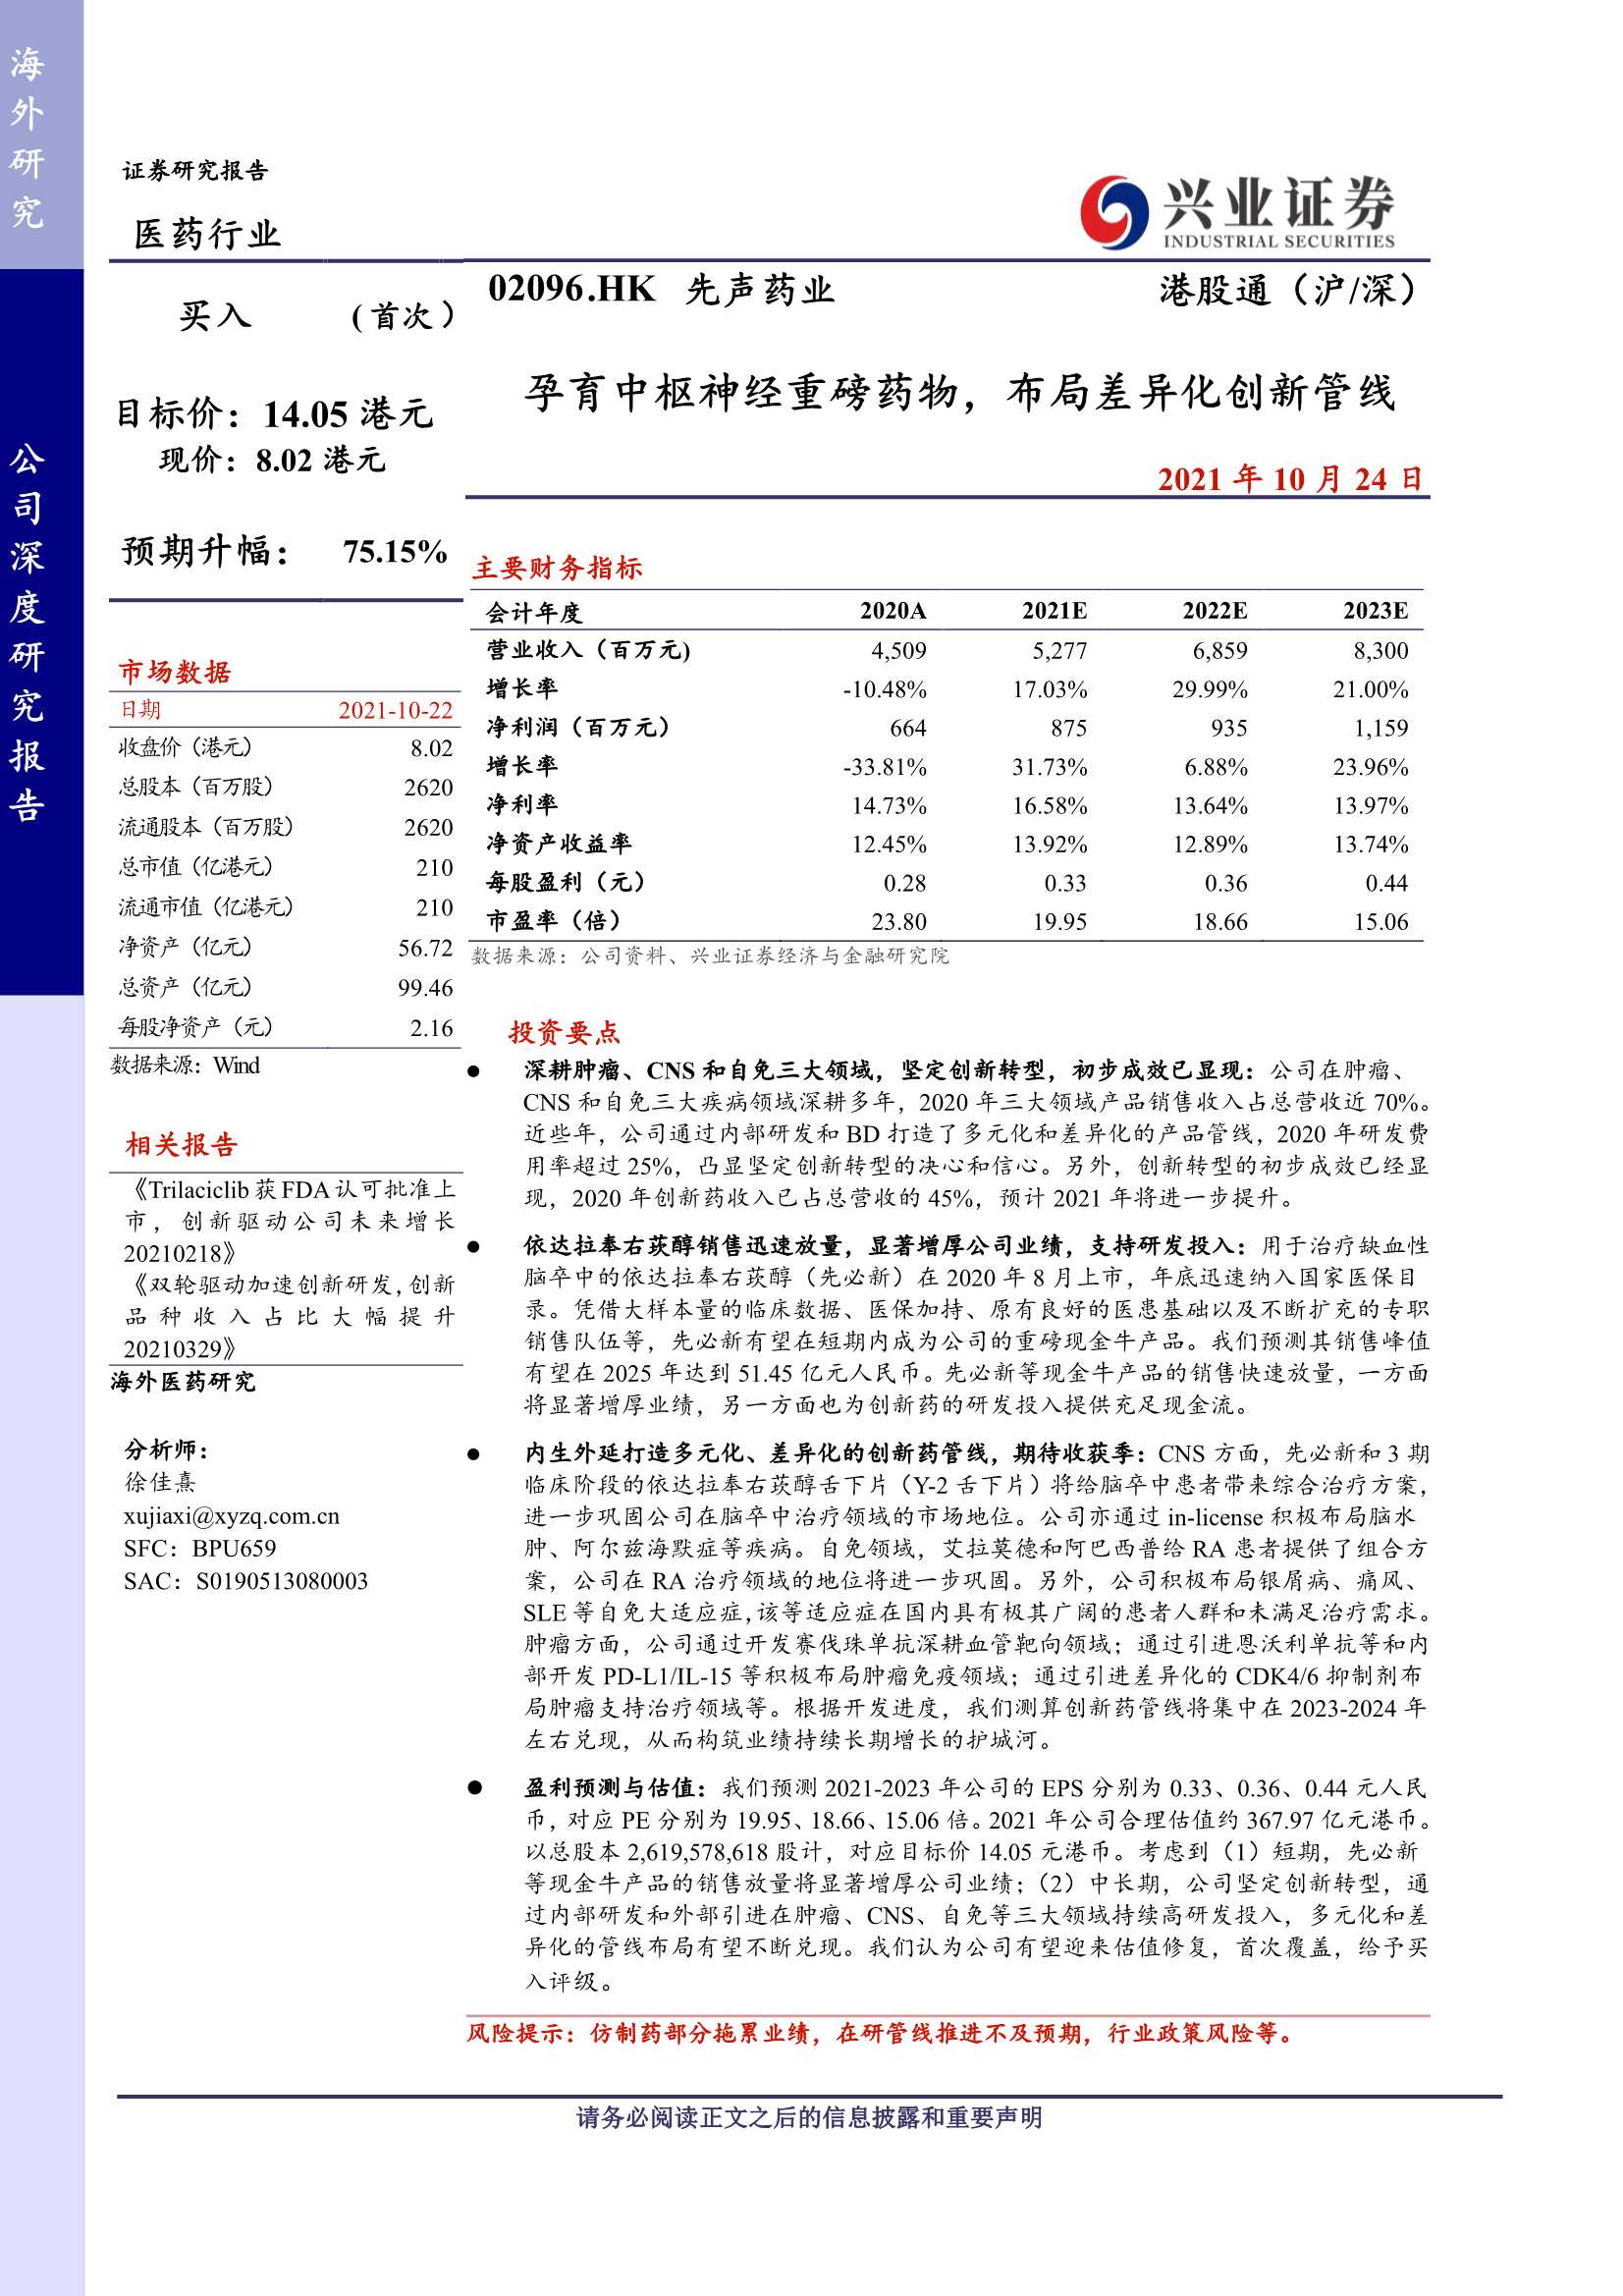 兴业证券-先声药业-2096.HK-孕育中枢神经重磅药物，布局差异化创新管线-20211024-46页